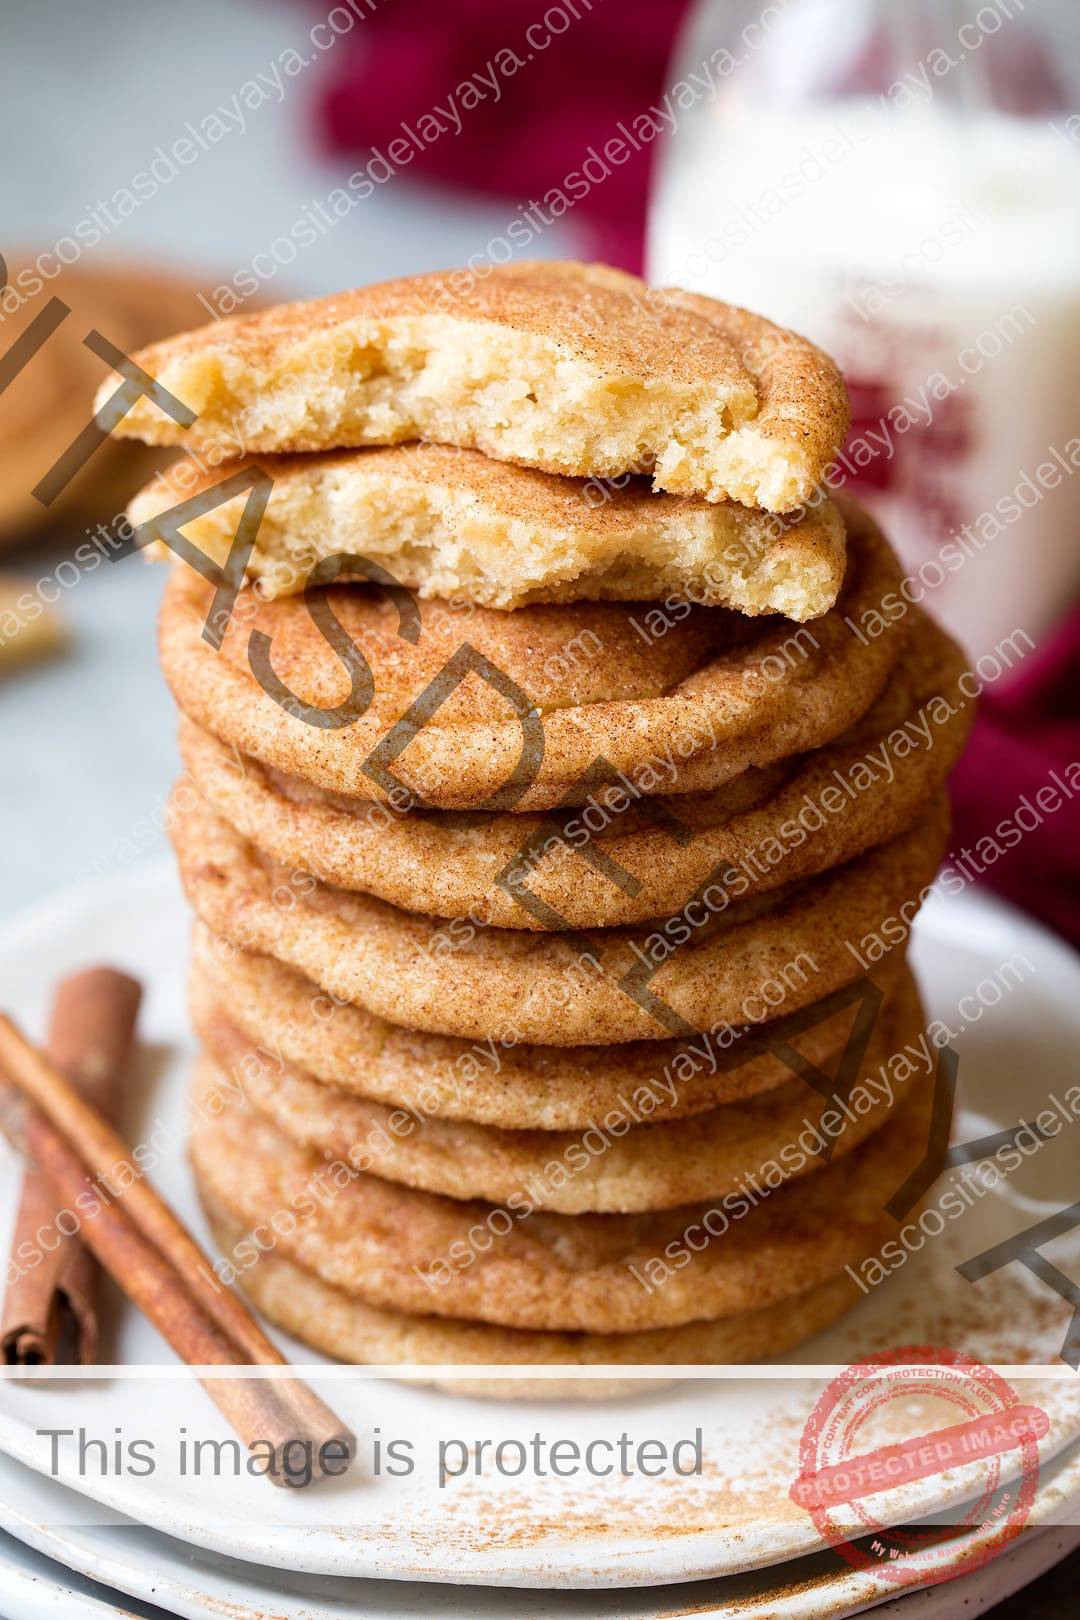 Pila de galletas snickerdoodle en un plato con un cooke en la parte superior partido por la mitad para mostrar la textura del interior.